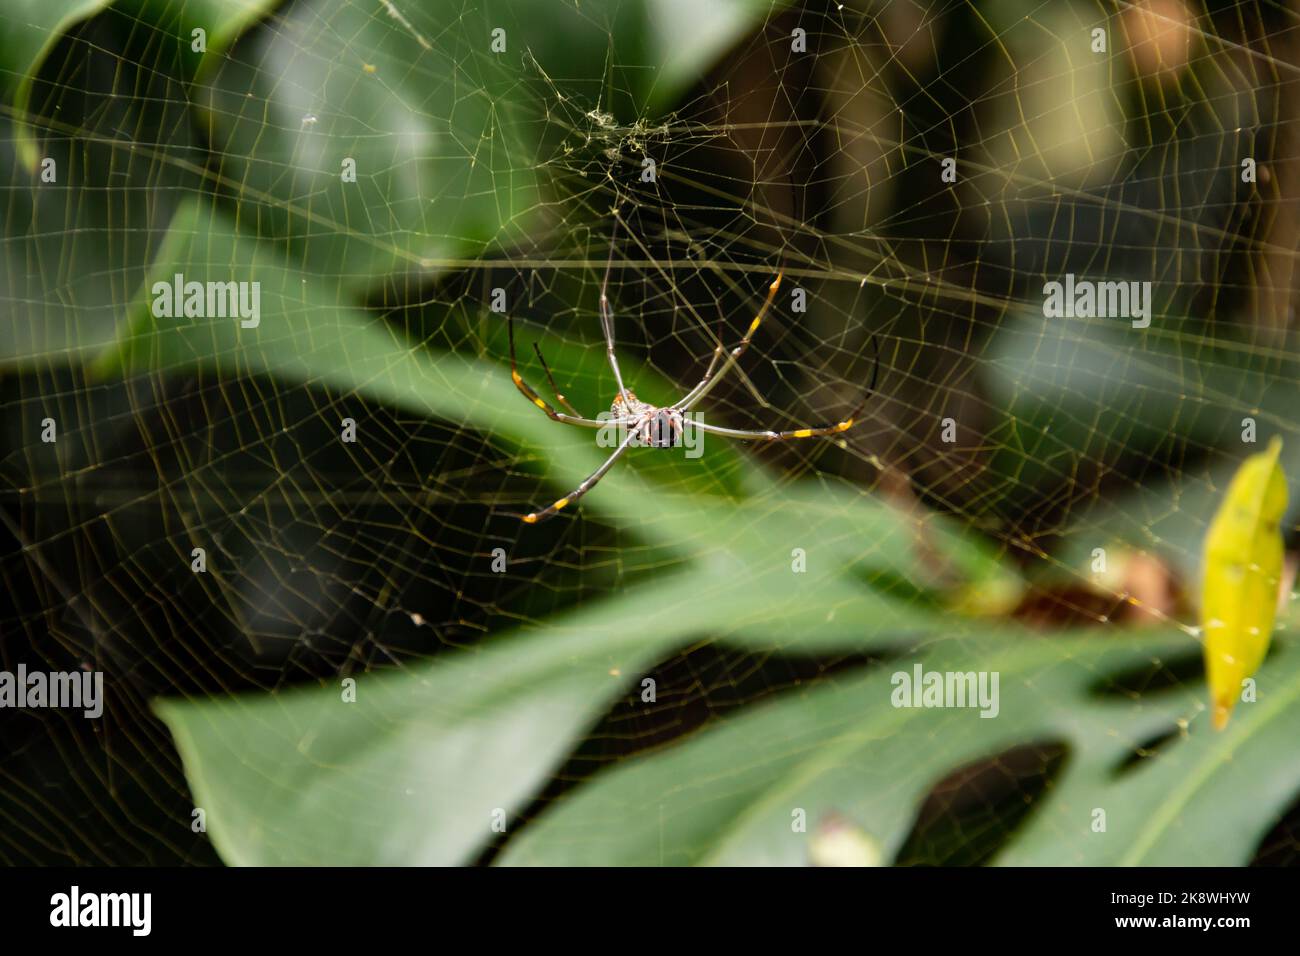 Araignée dans la toile de l'araignée Banque D'Images